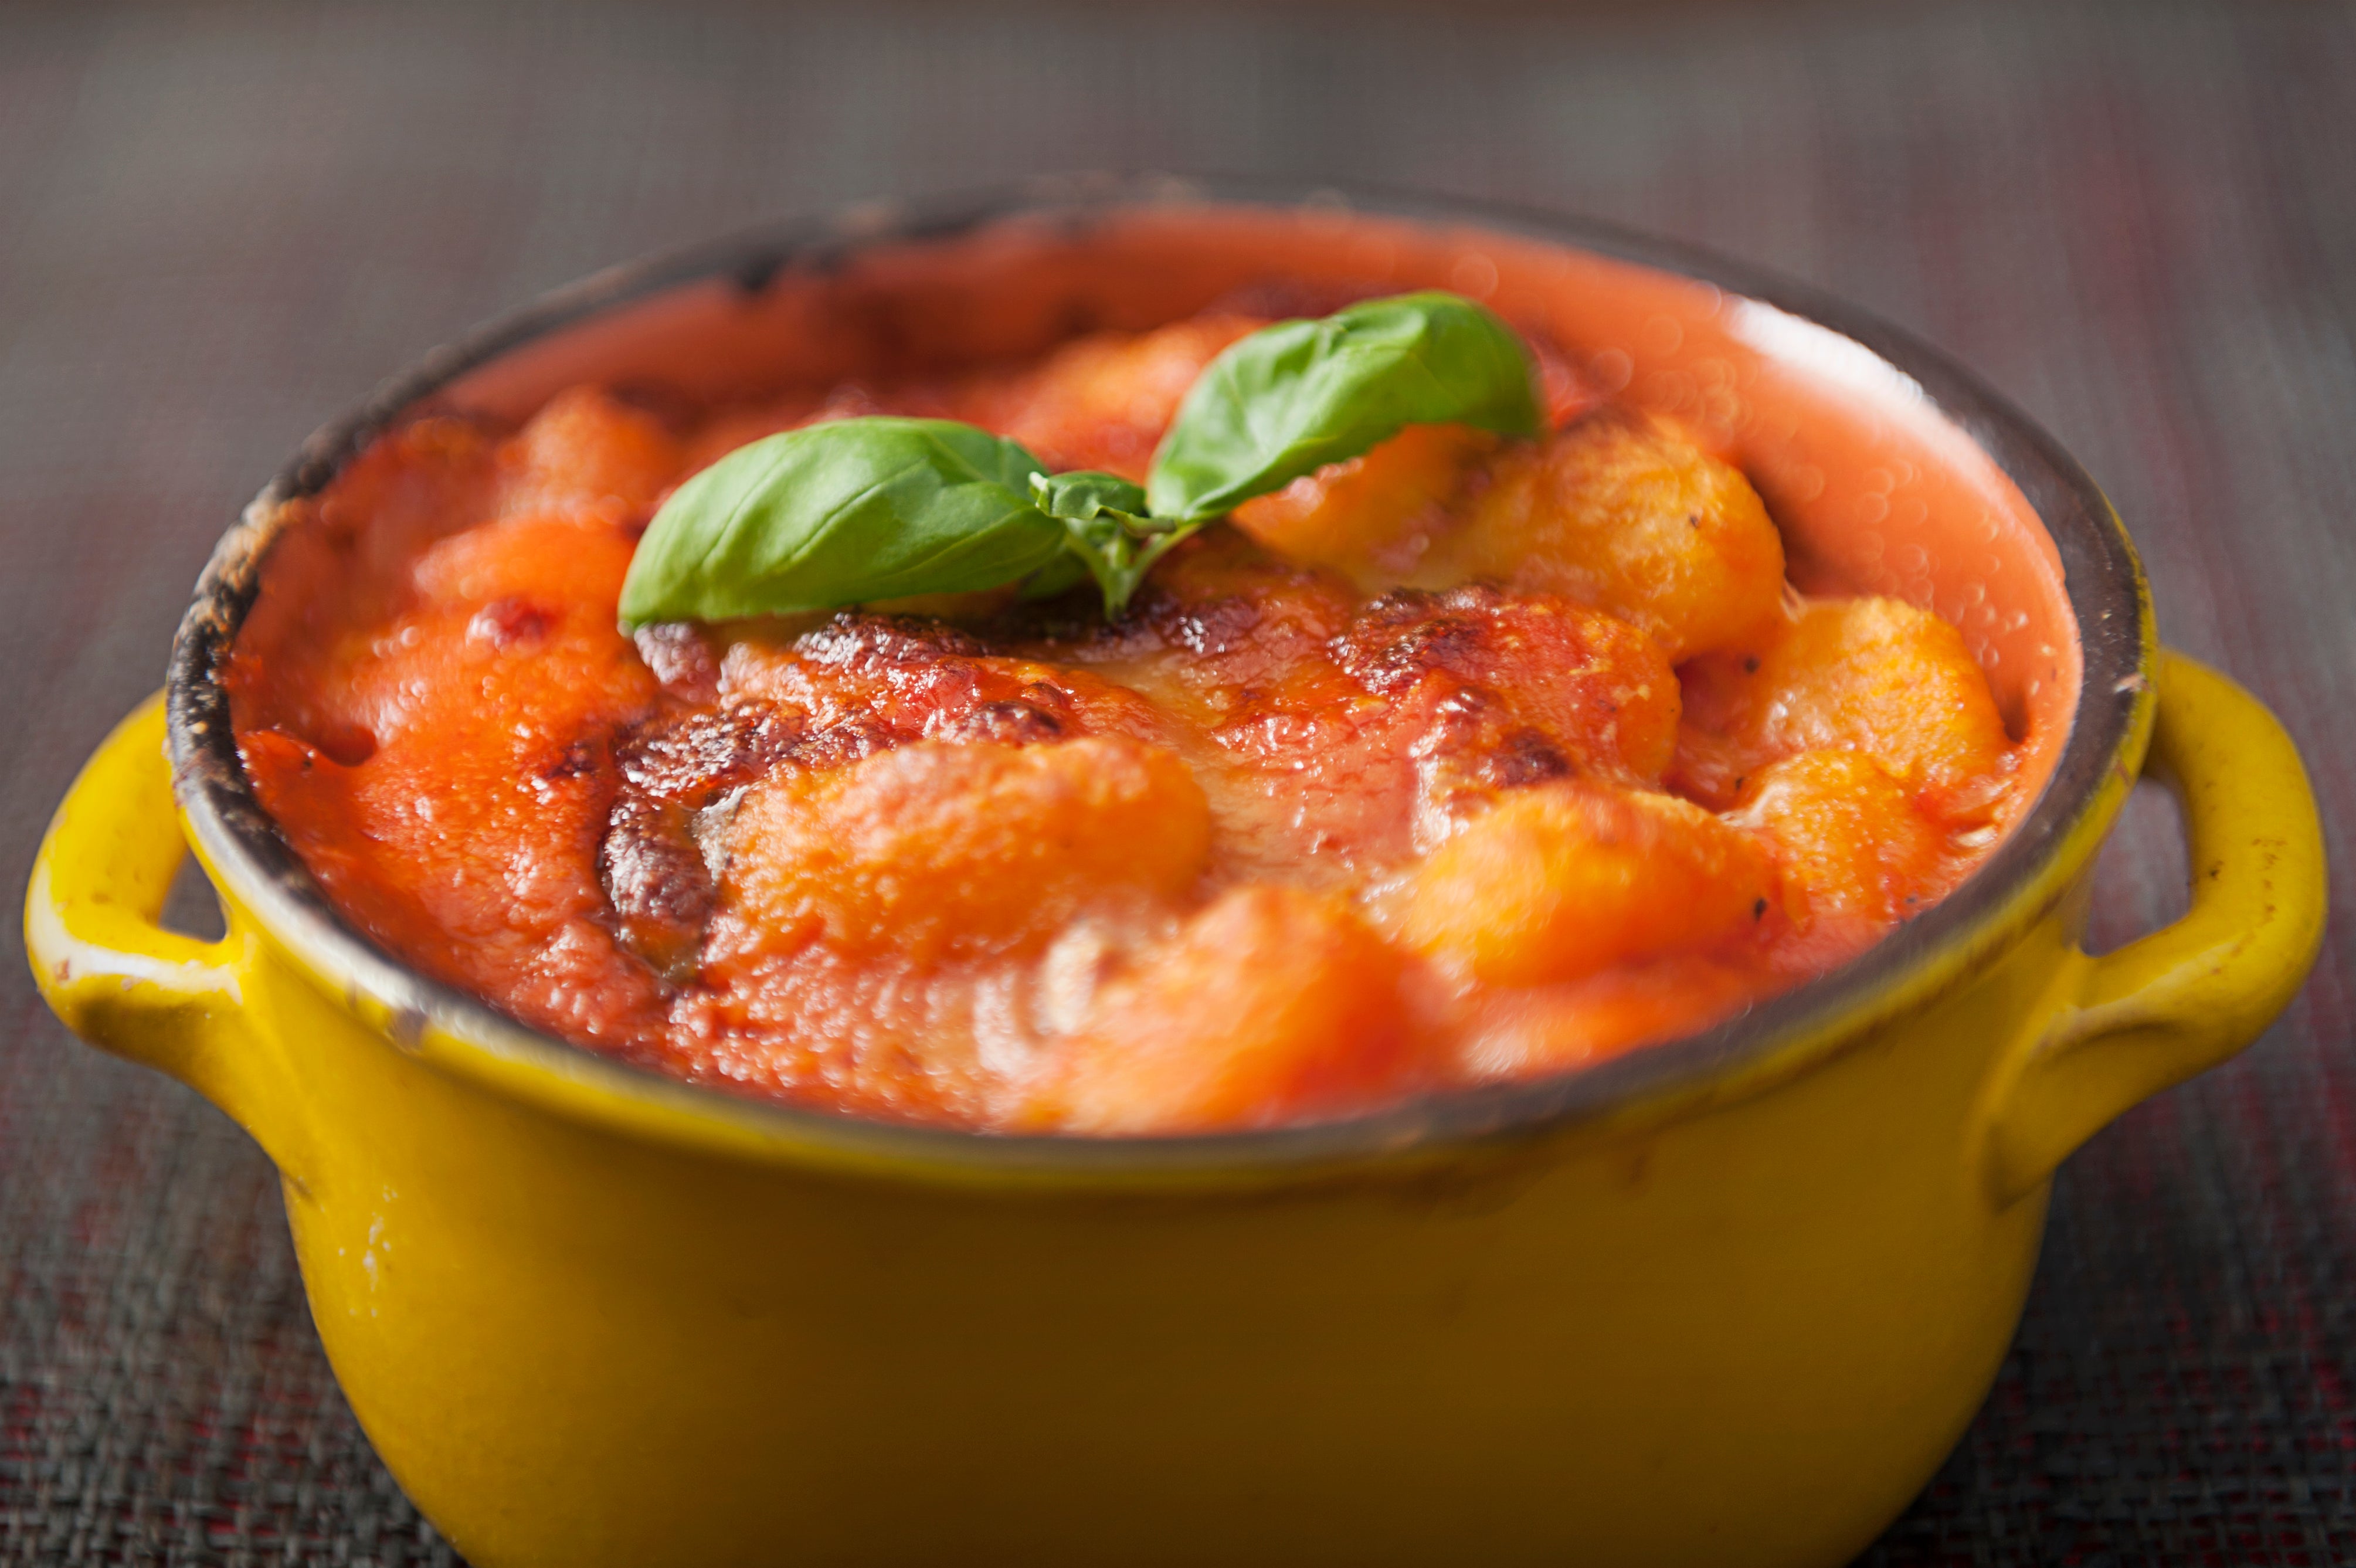 Gnocchi with tomato sauce and mozzarella